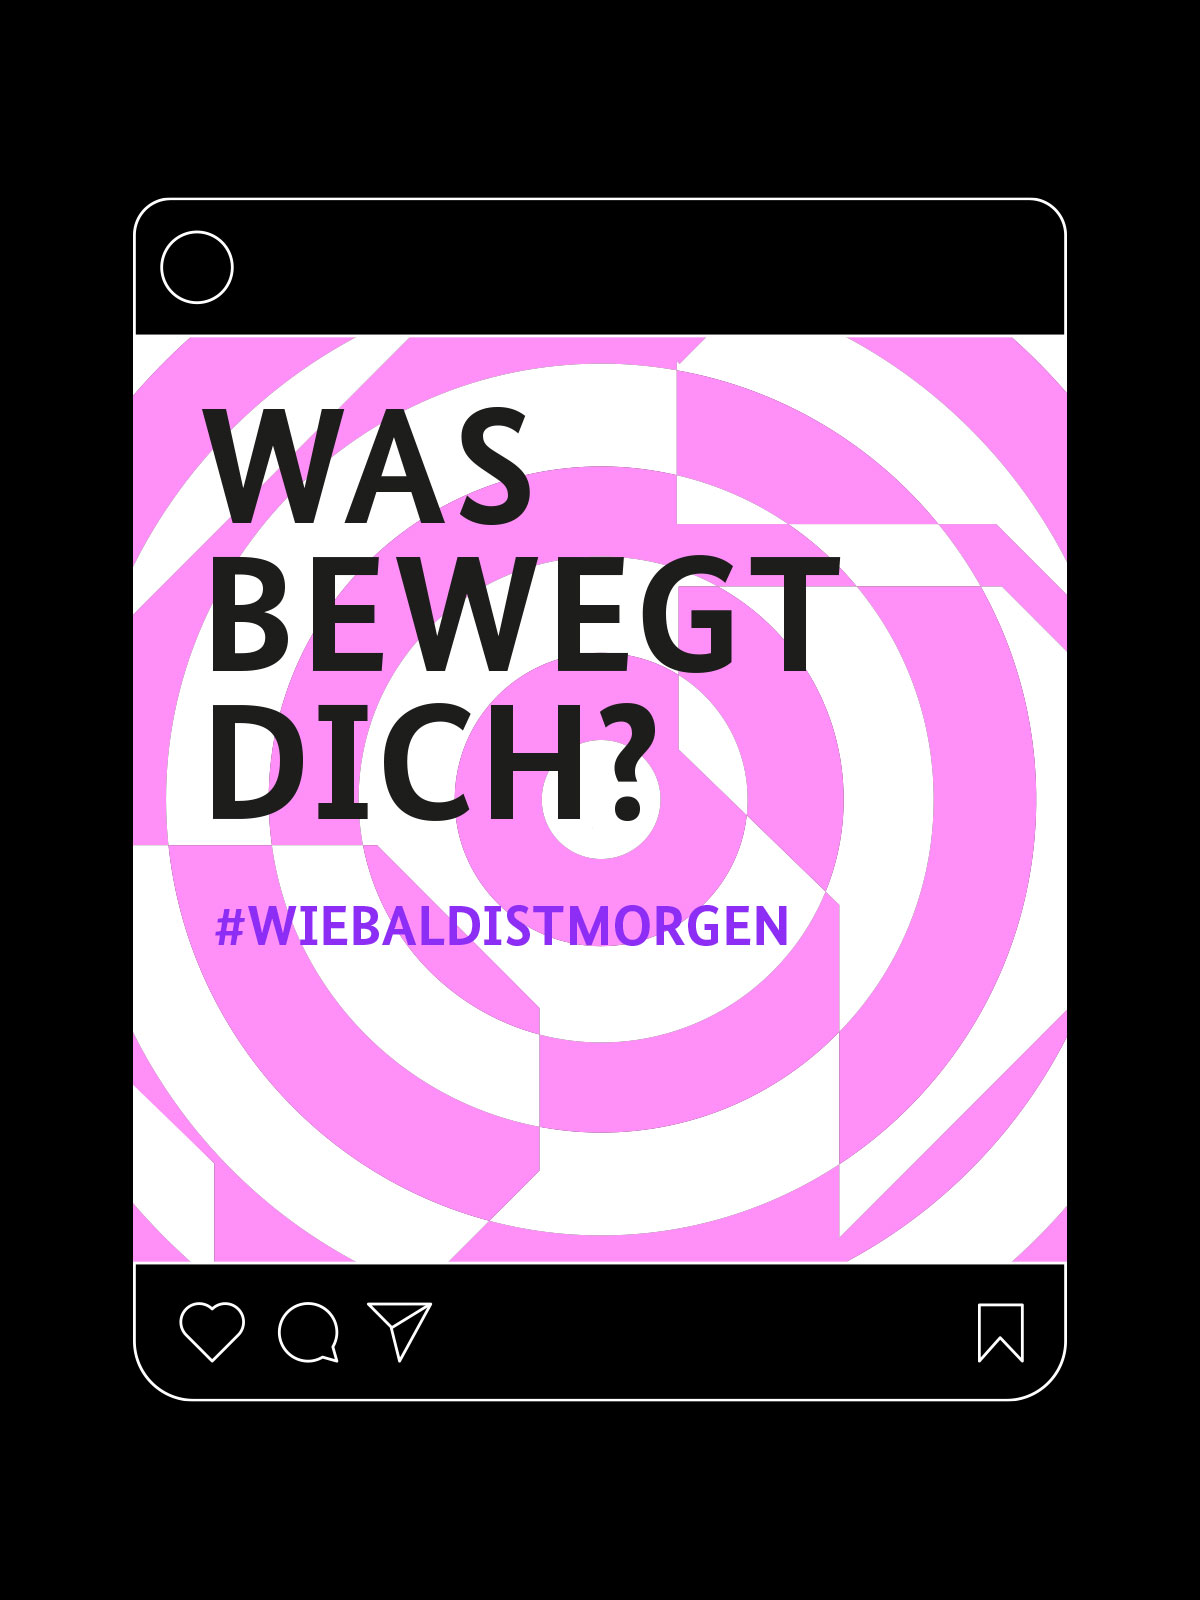 Menschen Bewegen 2021 Event Corporate Design Social Media Post rosa-weißes Keyvisual im Hintergrund darauf schwarze Schrift Was bewegt dich? #wiebaldistmorgen